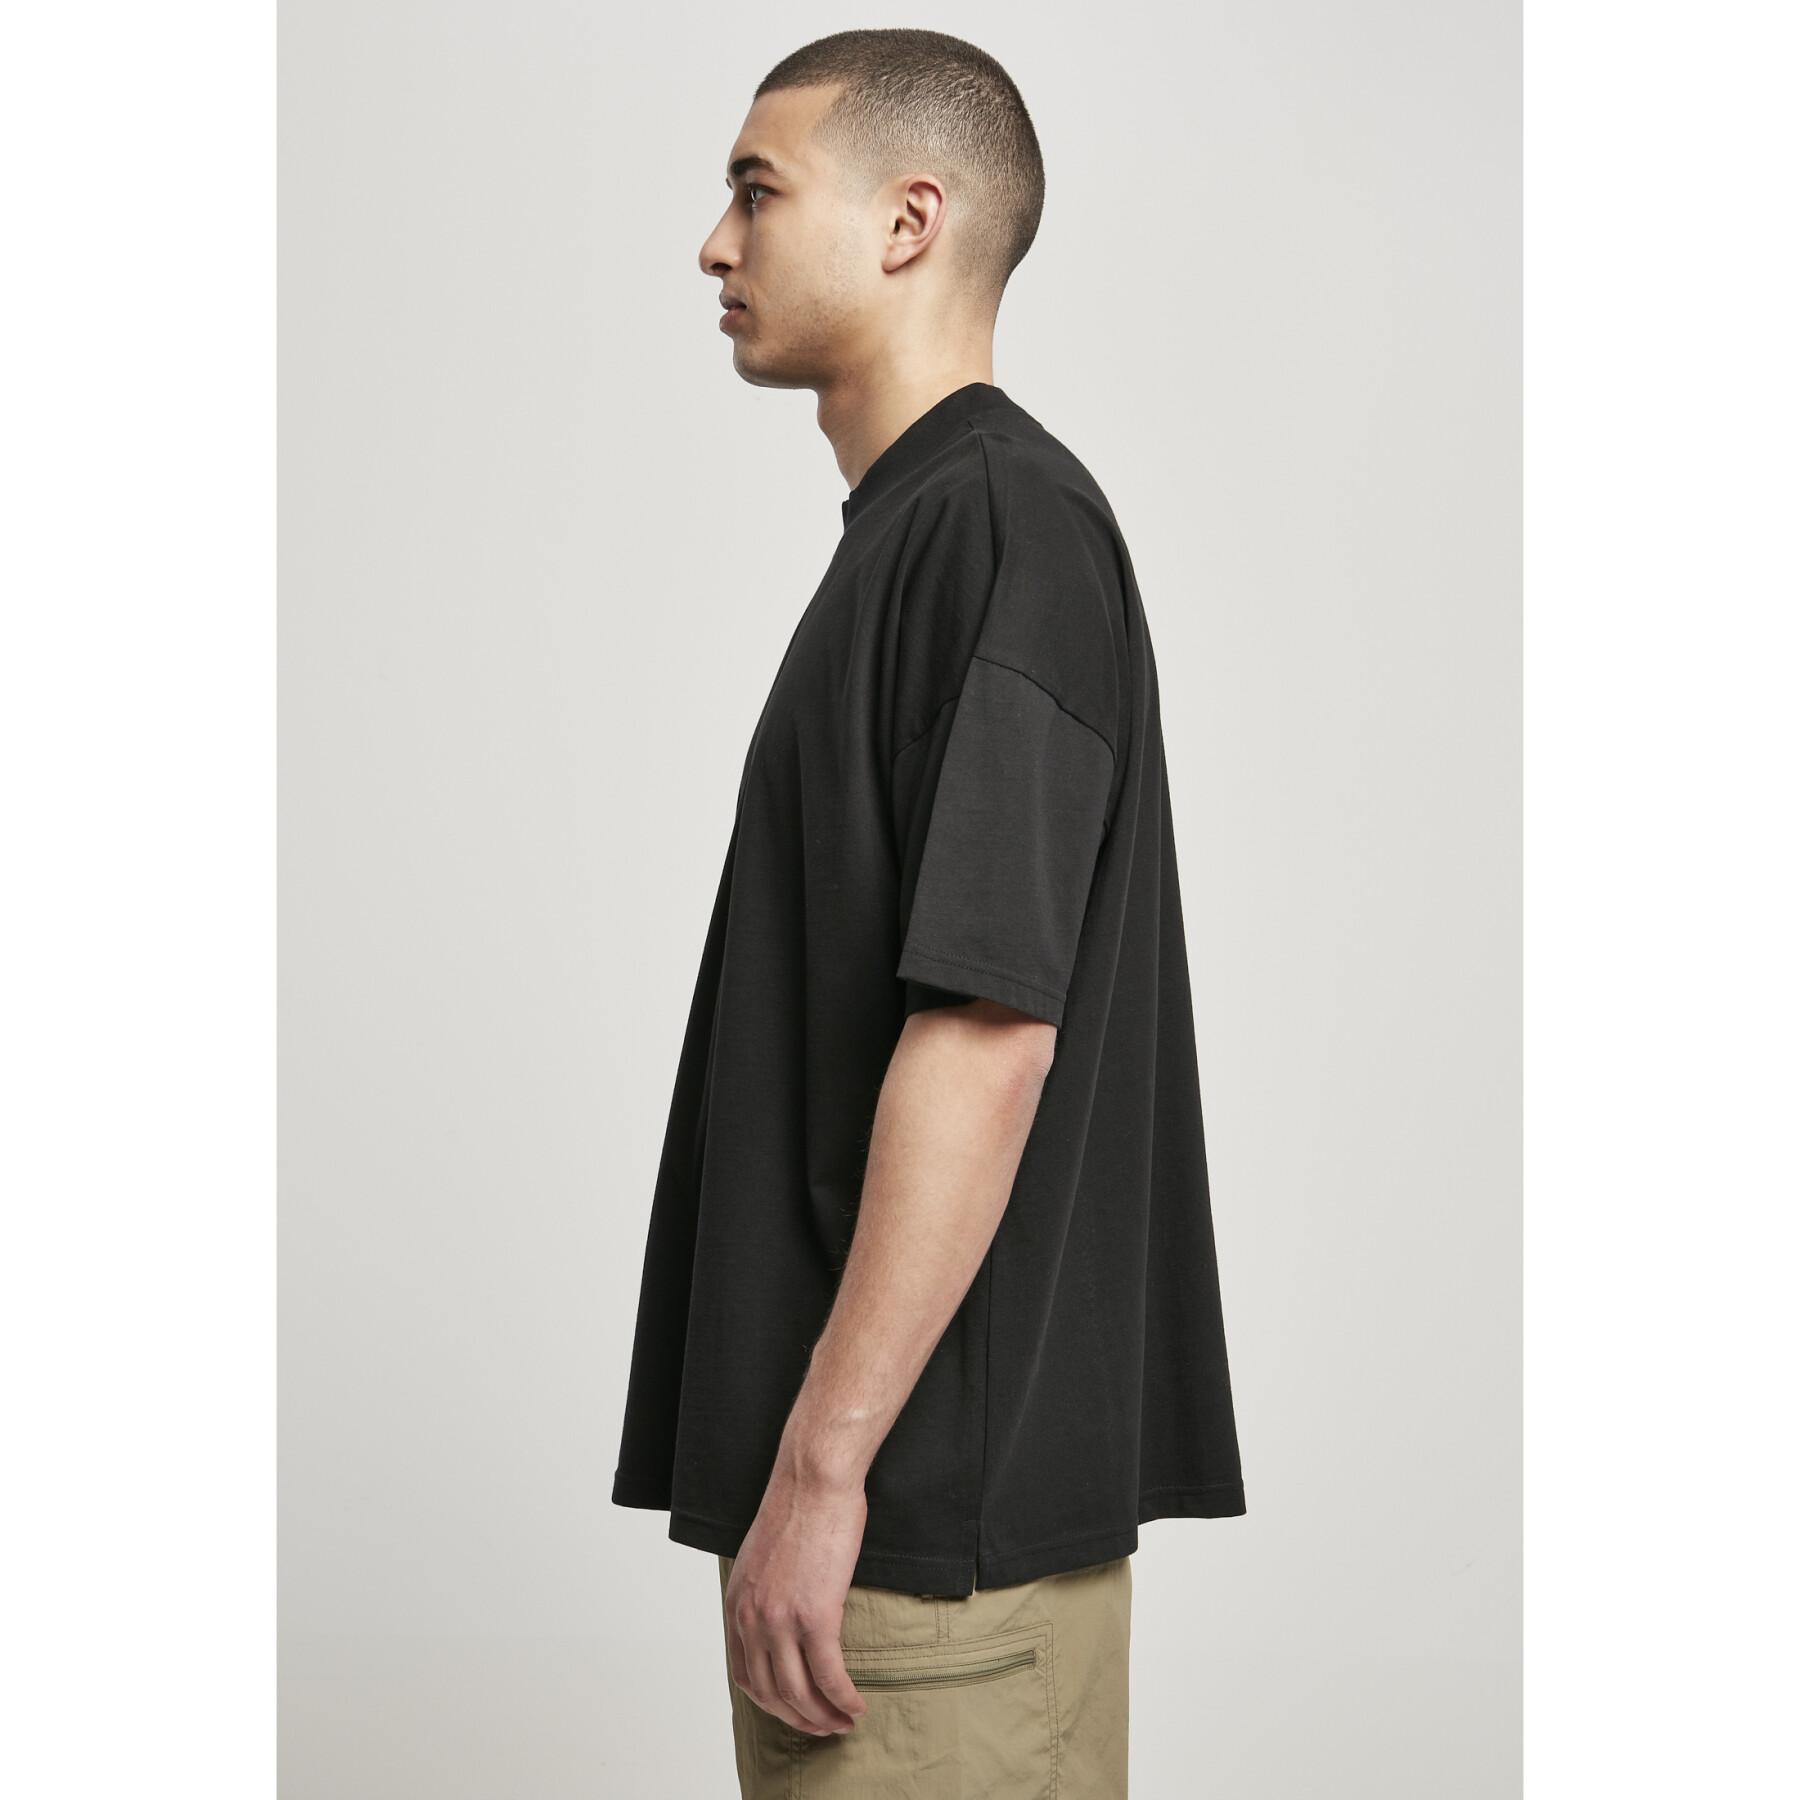 T-shirt Urban Classics oversized mock neck (taglie grandi)